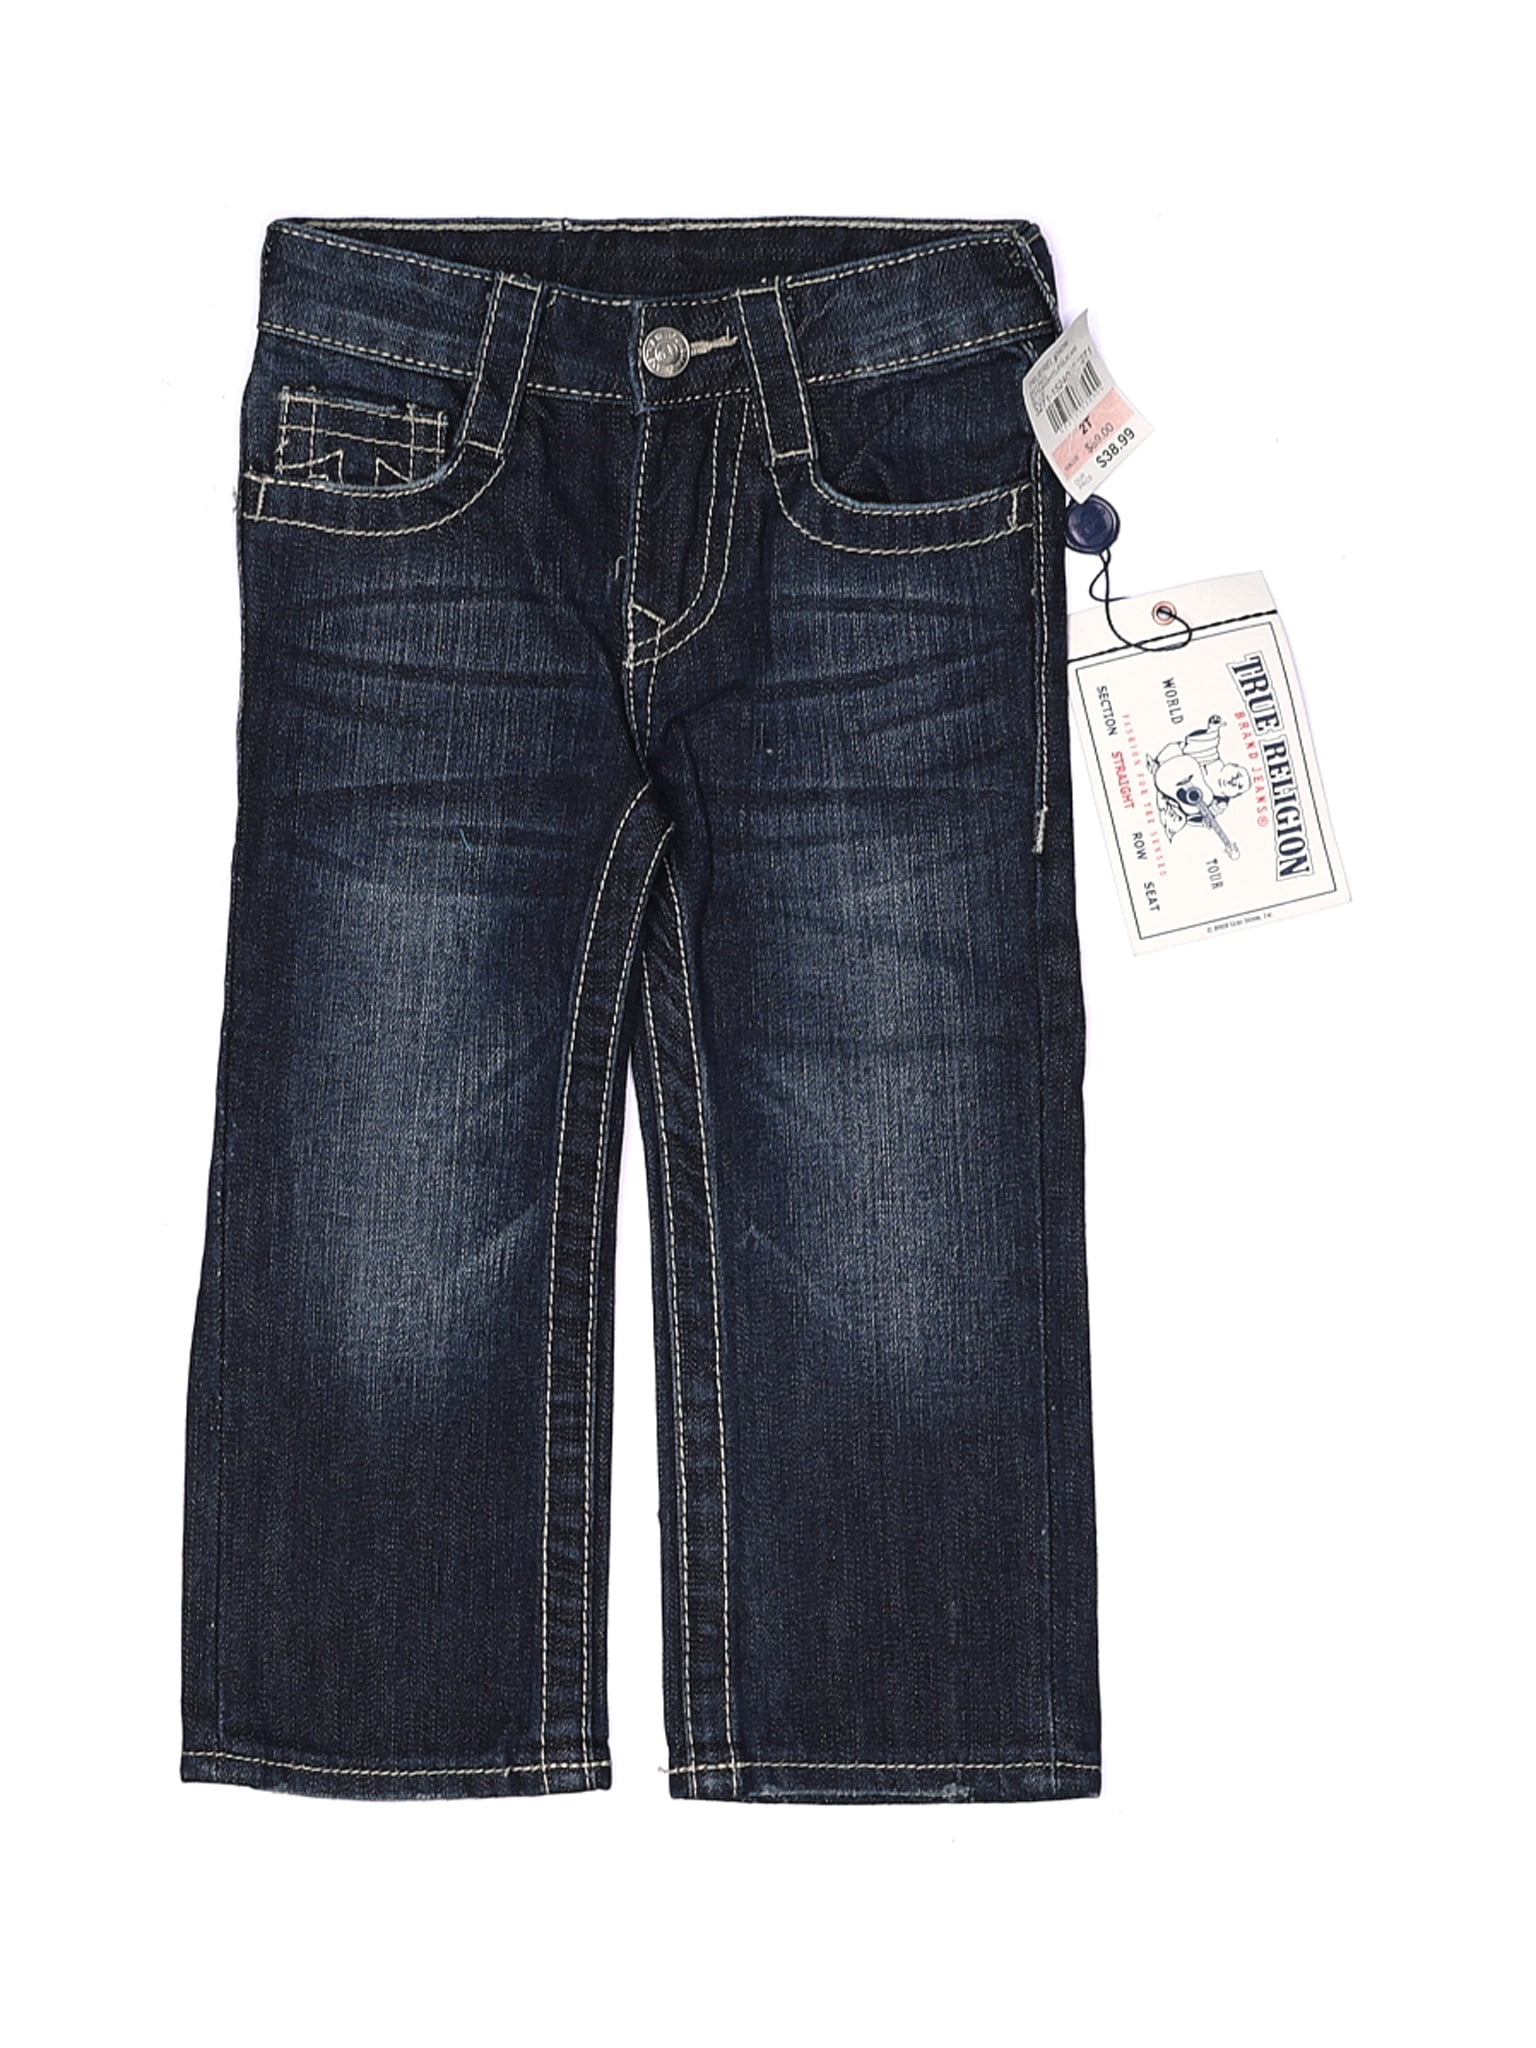 true religion jeans walmart